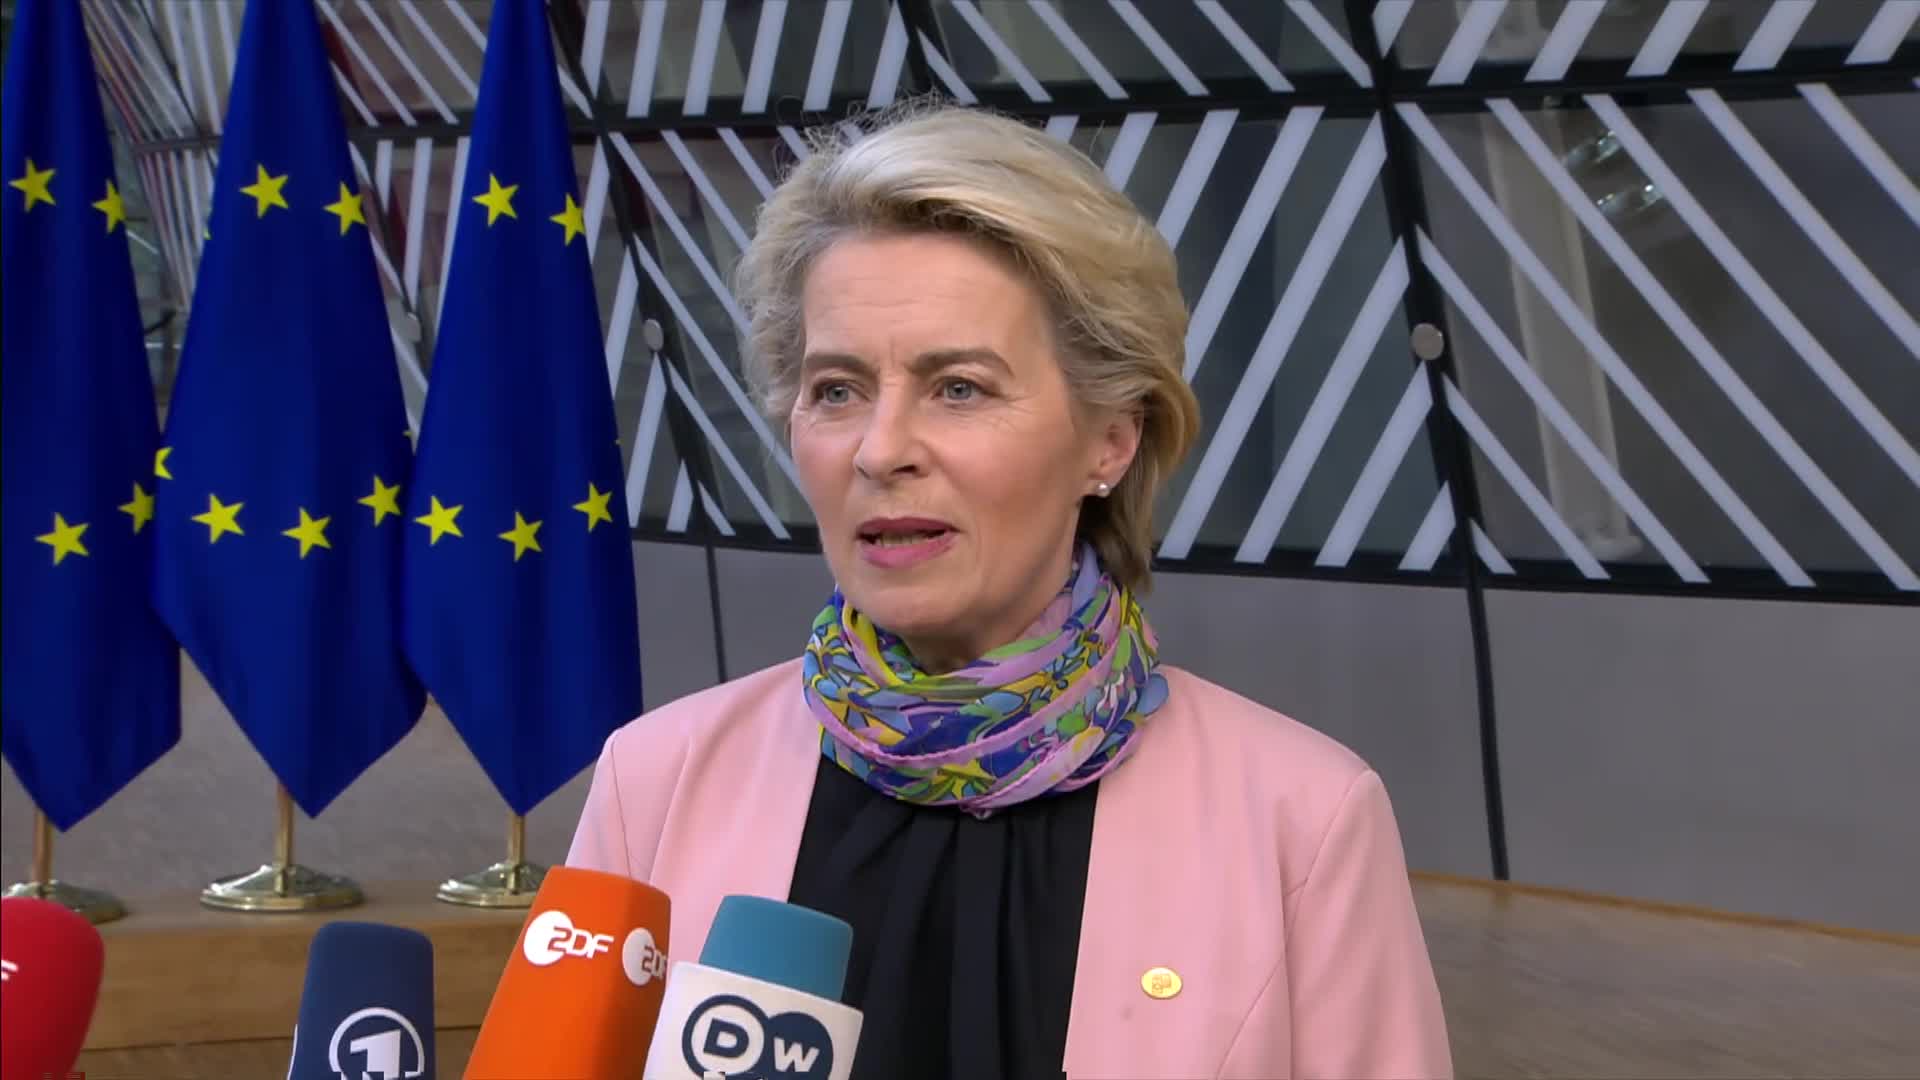 Video: Doorstep statement by Ursula von der Leyen, President of the European Commission.